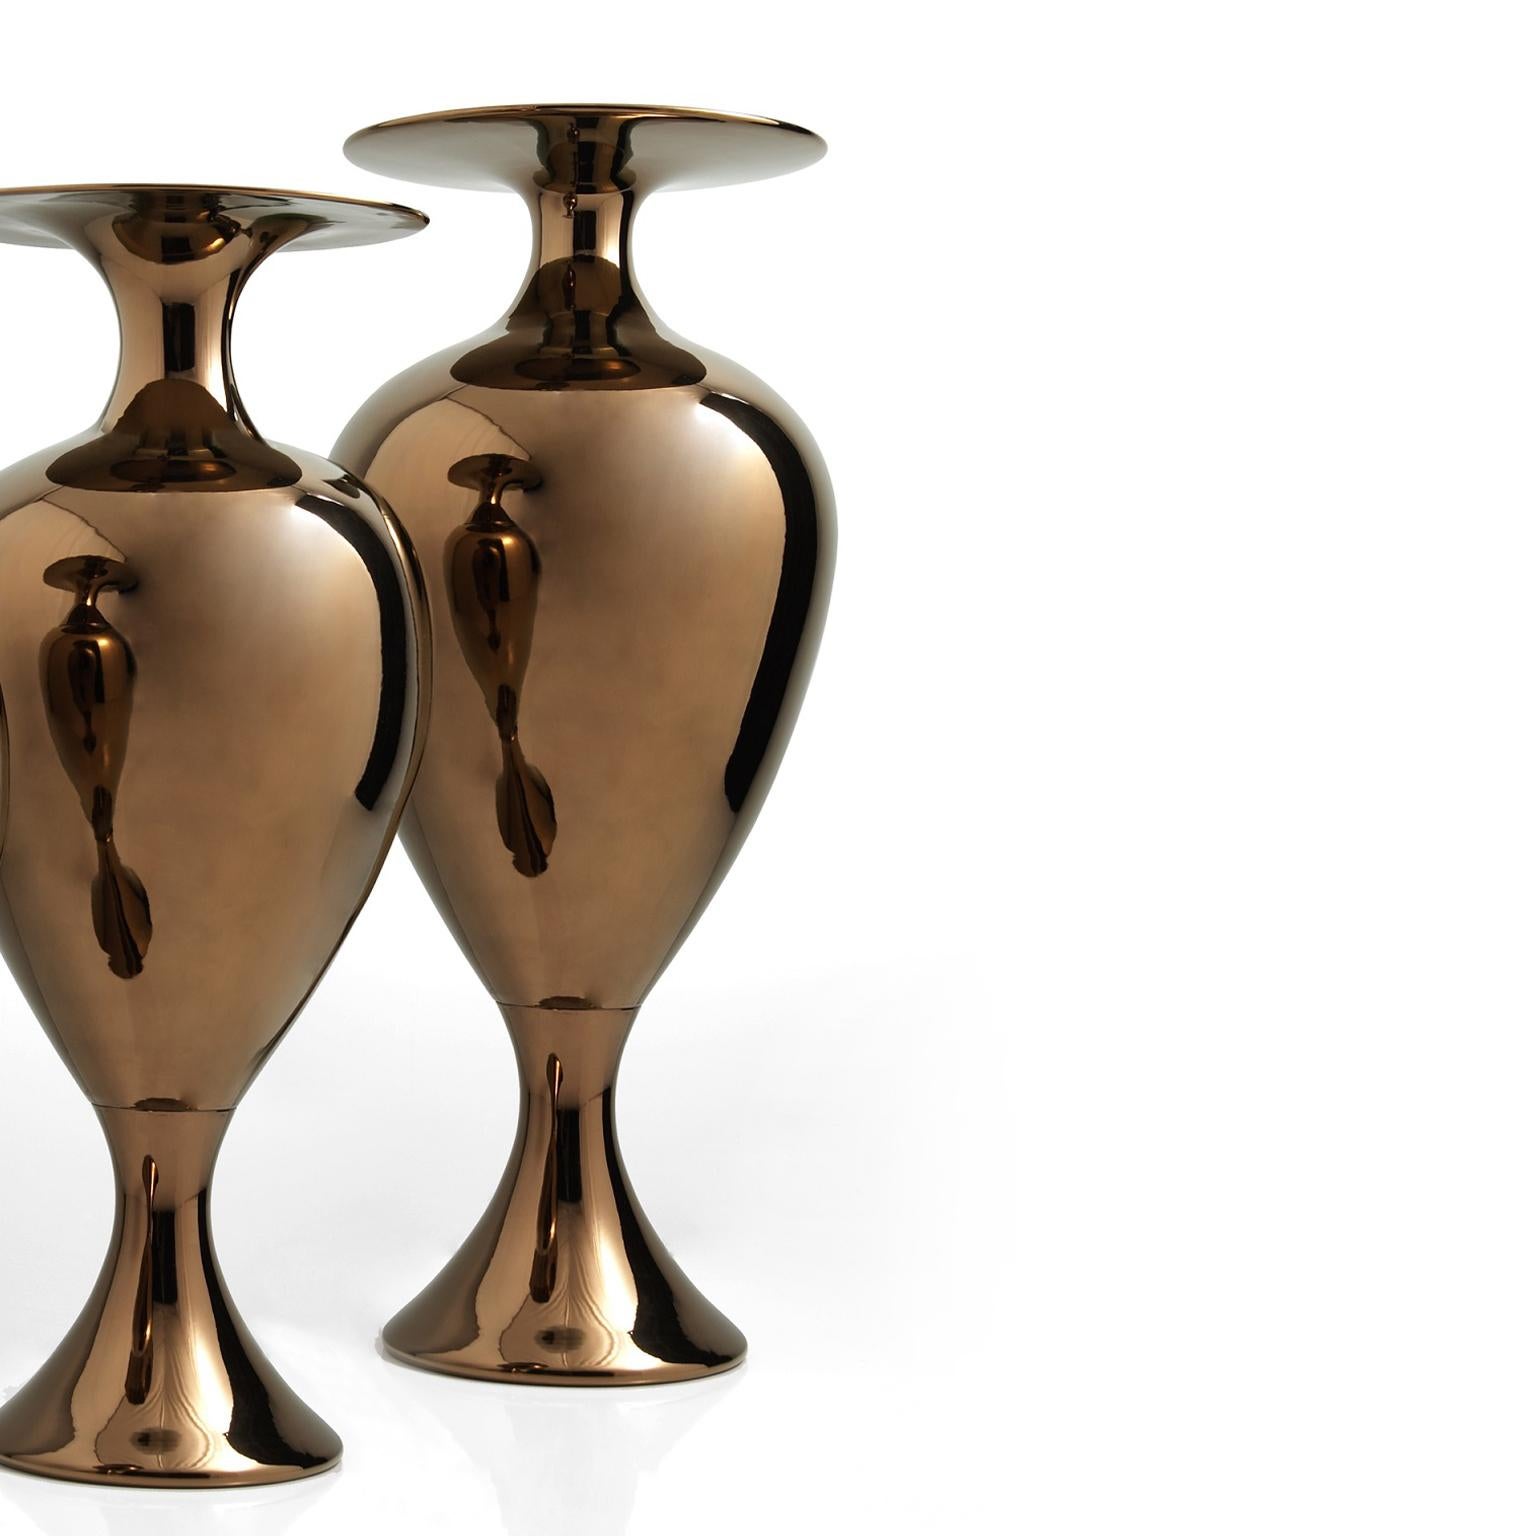 Vase en céramique fabriqué à la main en bronze
CAMILLE - code VS006, mesures : H. 120.0 cm., Dm. 45.0 cm.